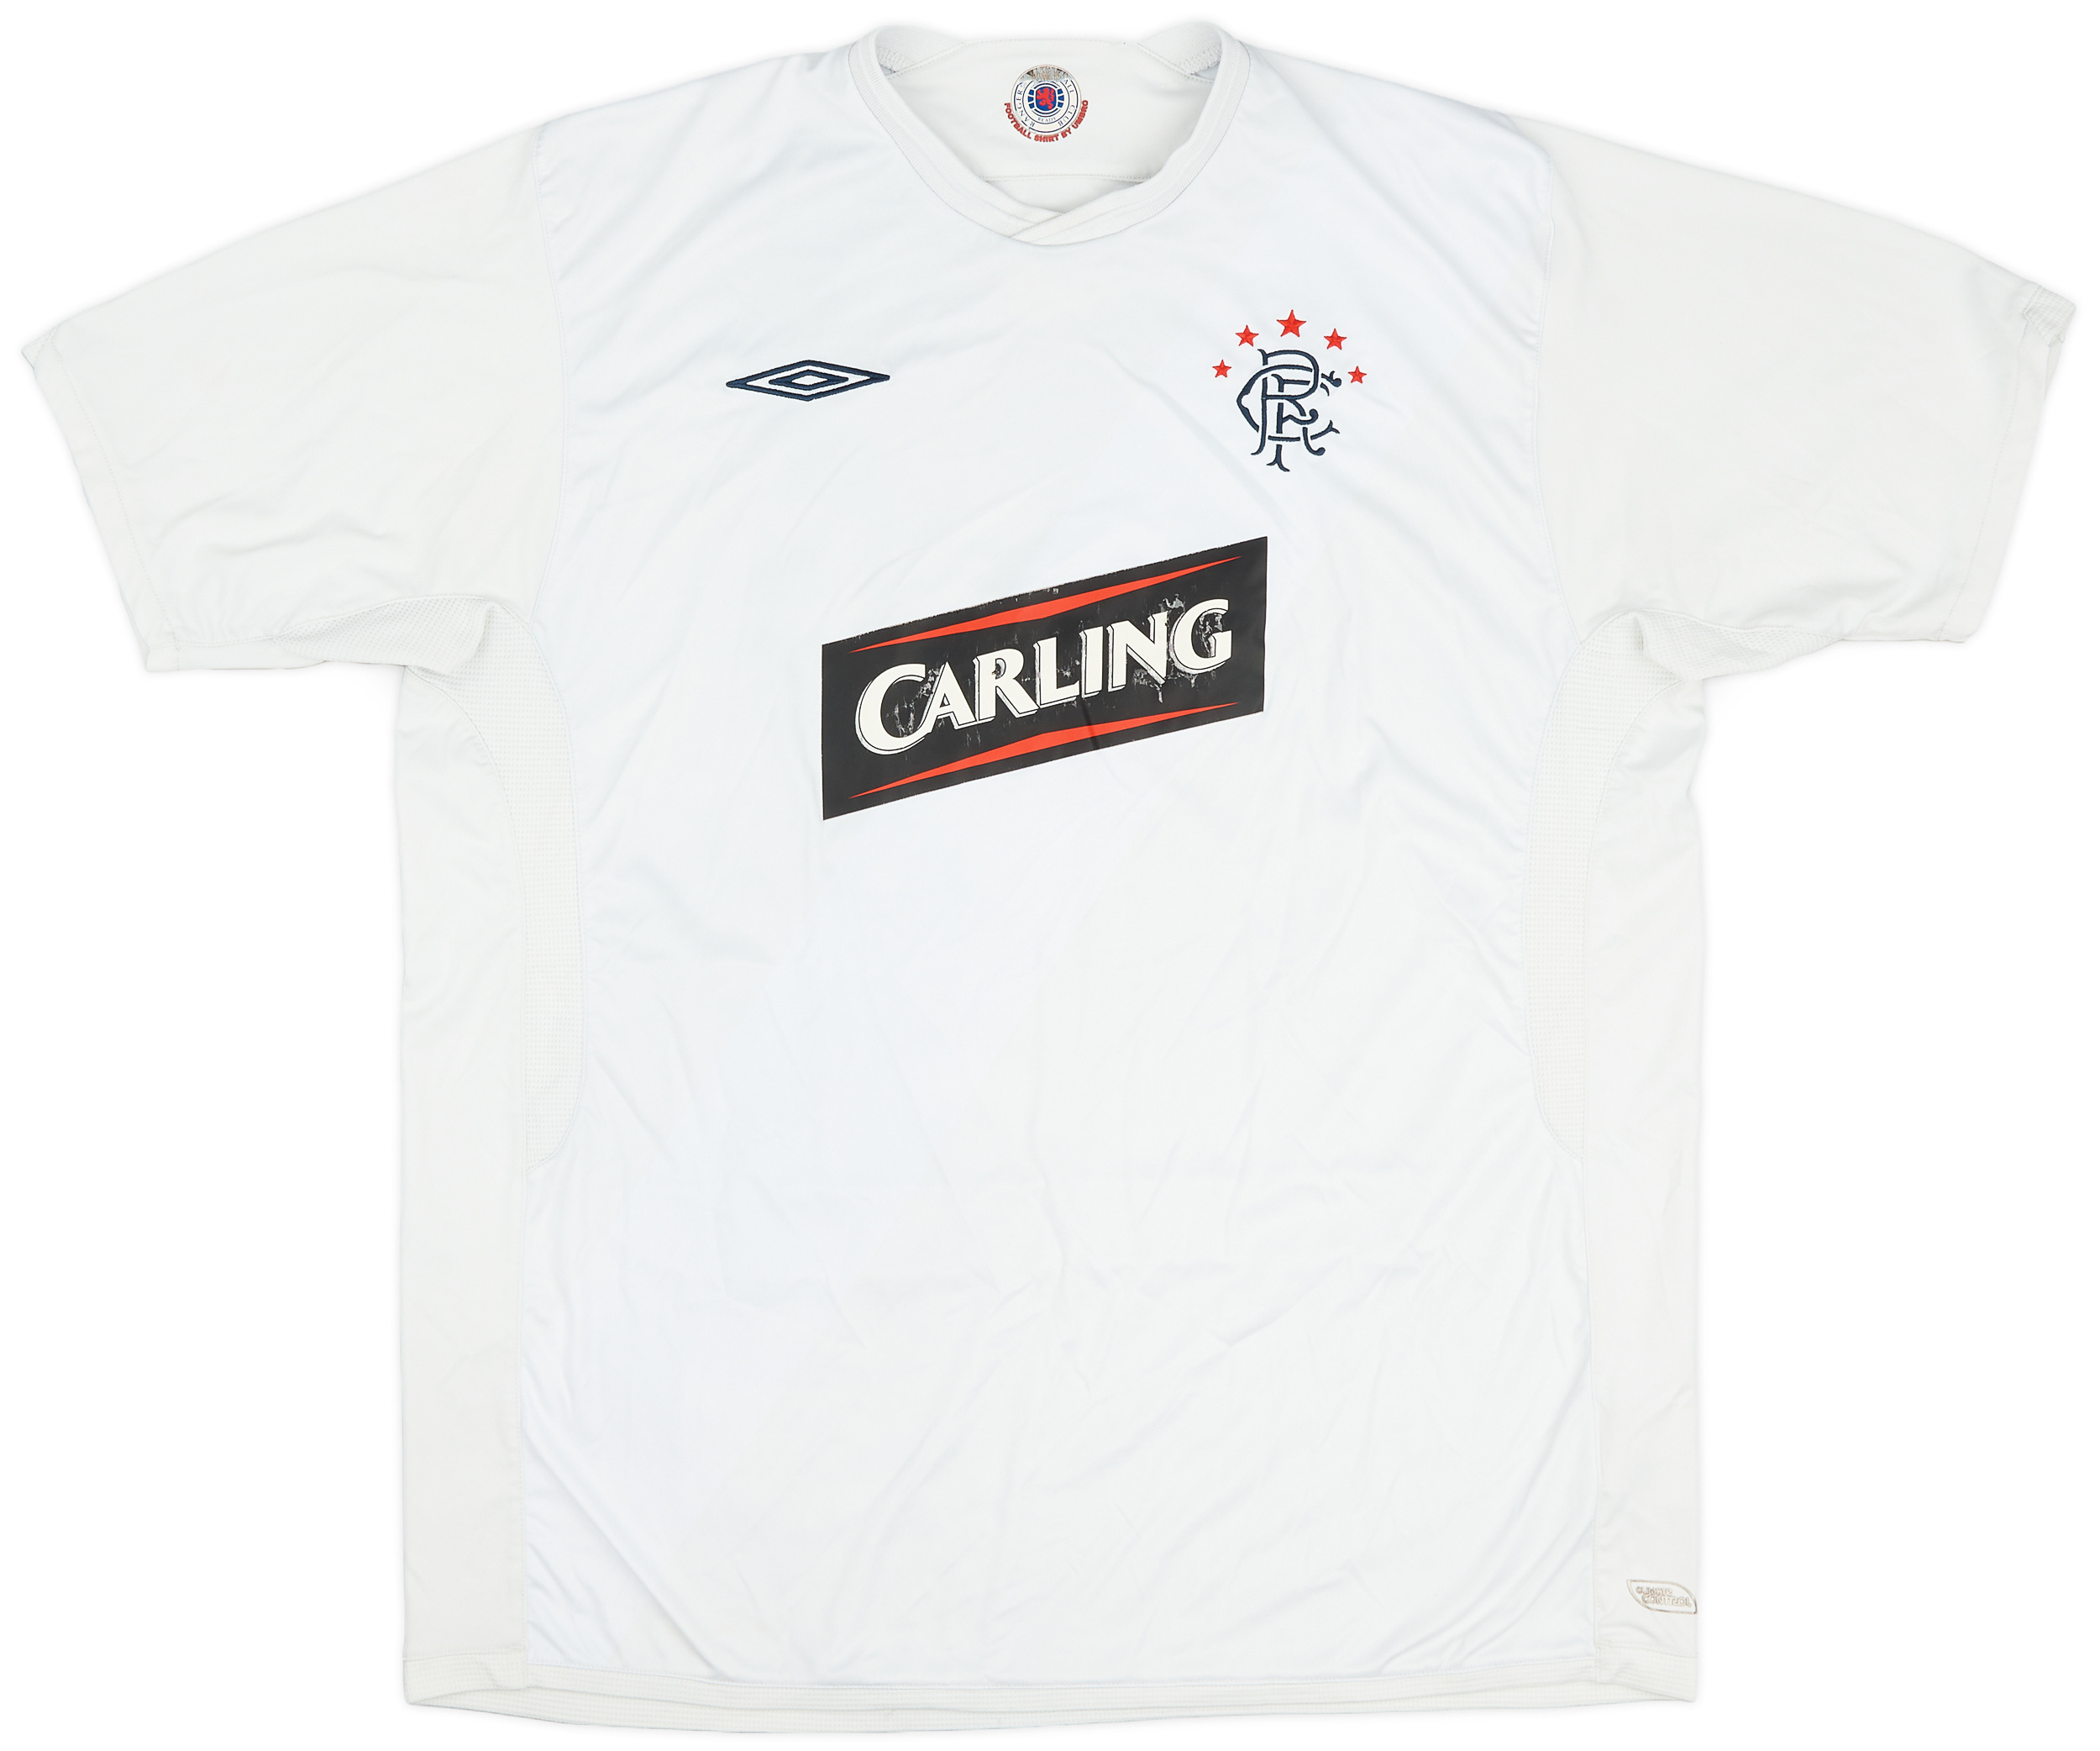 2009-10 Rangers Third Shirt - 5/10 - ()